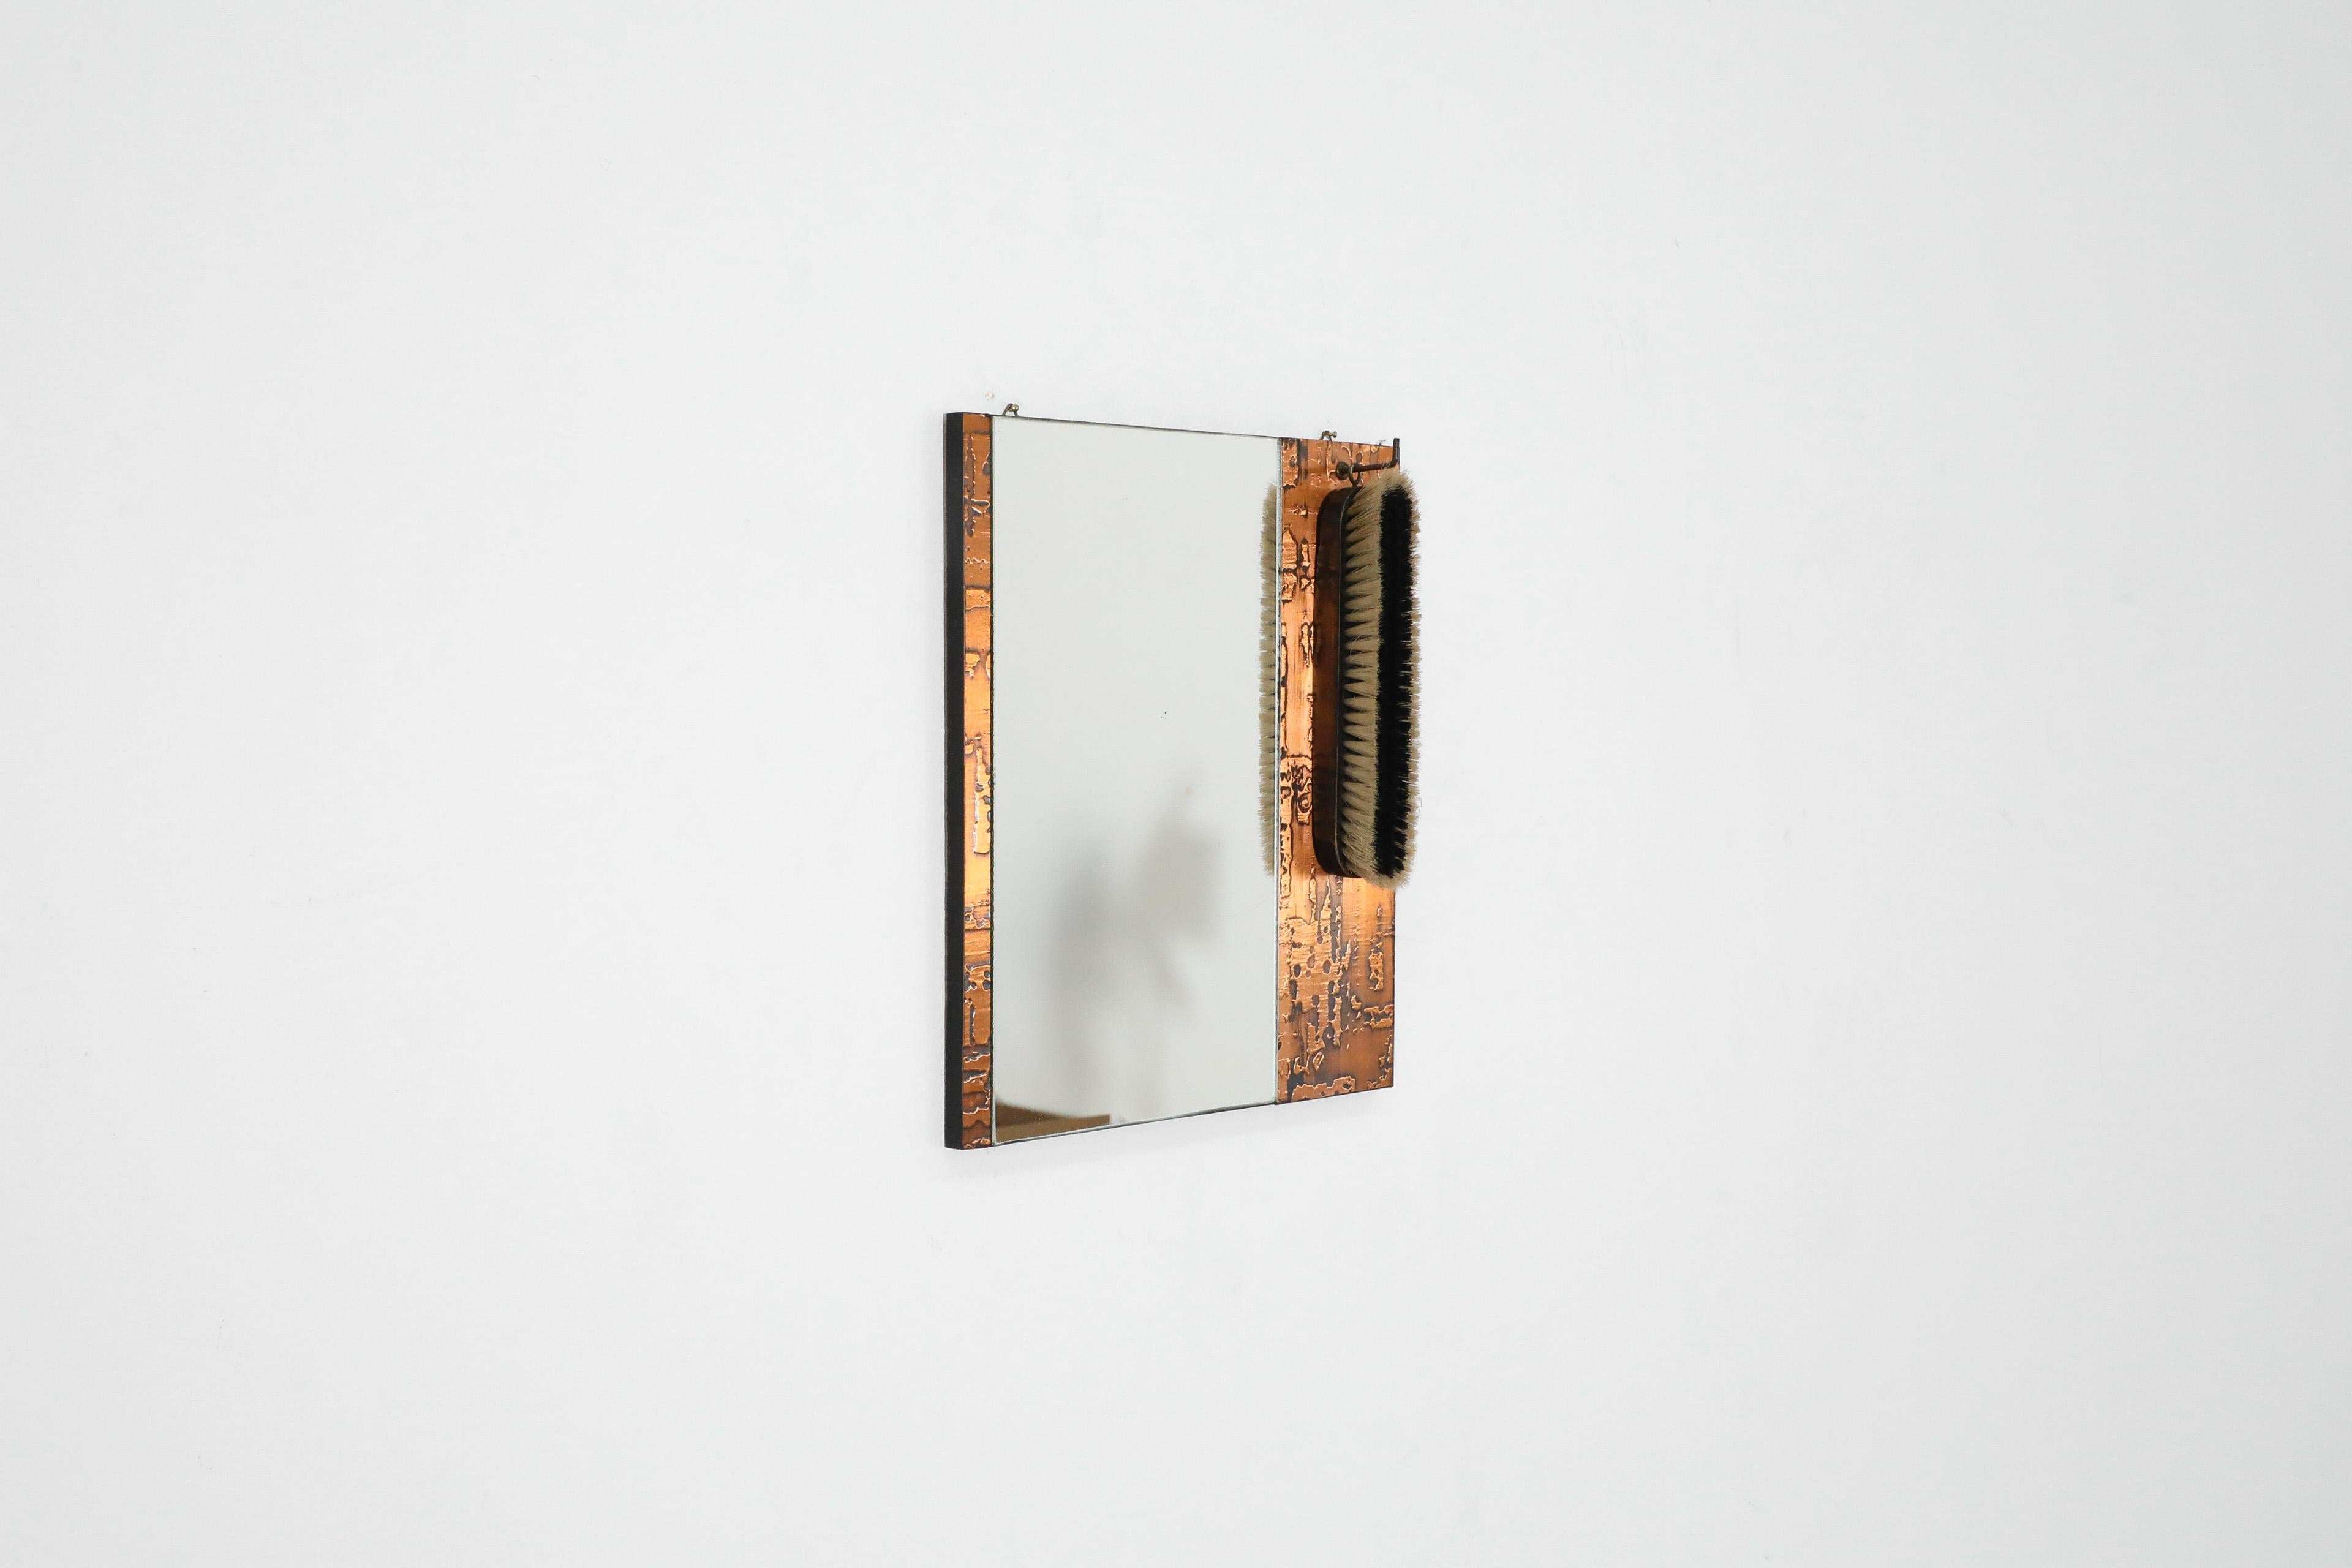 Dutch 1970s, Santambrogio & De Berti styl Wall Mount Copper Butler's Mirror with Brush For Sale